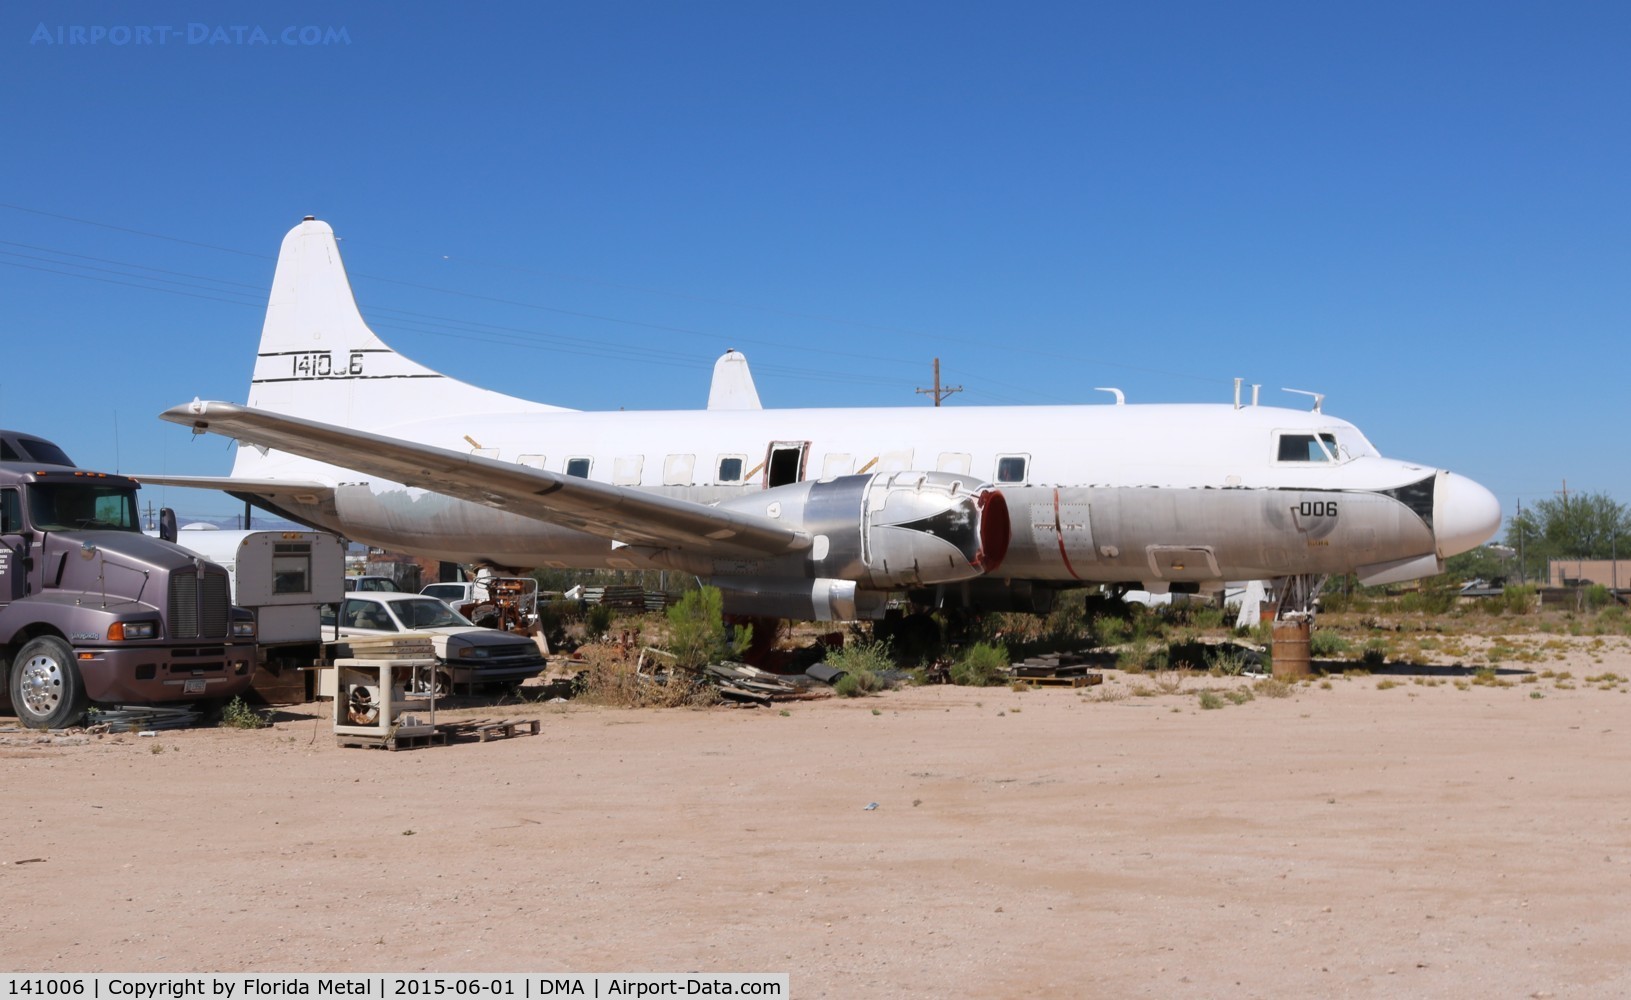 141006, 1955 Convair C-131F (R4Y-1) Samaritan C/N 289, R4Y-1 C-131